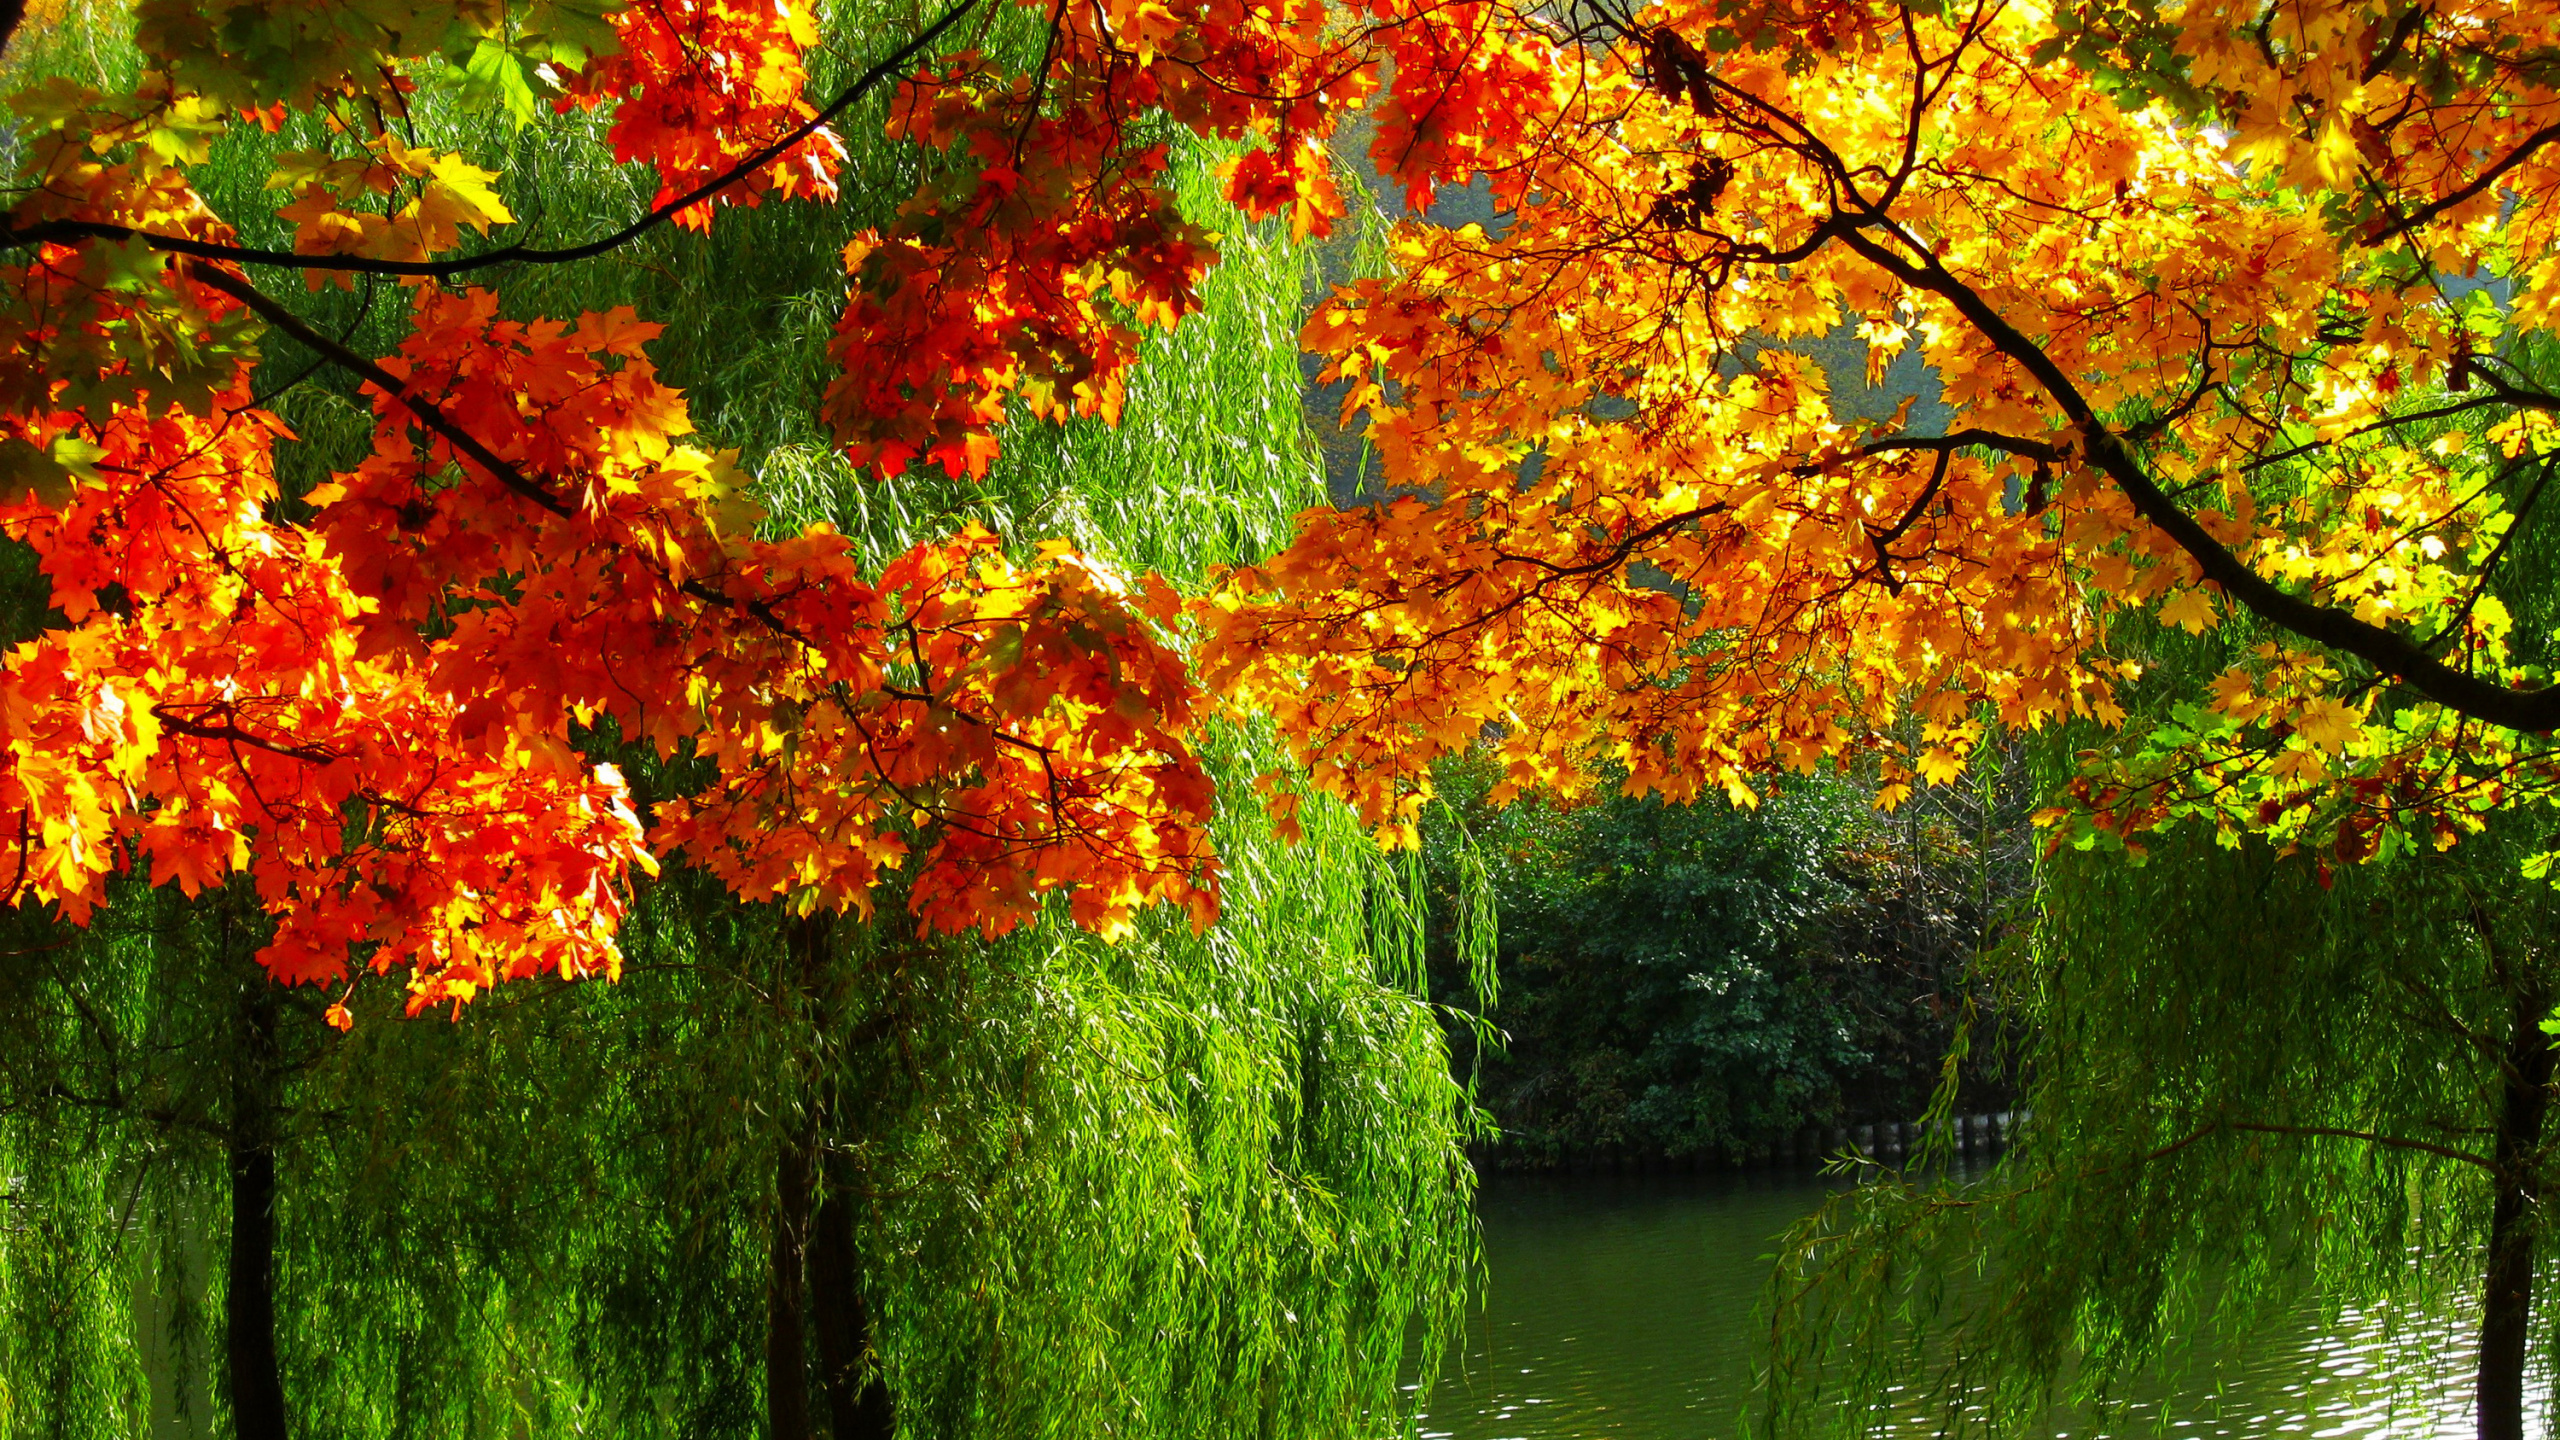 秋天的叶的颜色, 性质, 植被, 季节, 生态系统 壁纸 2560x1440 允许